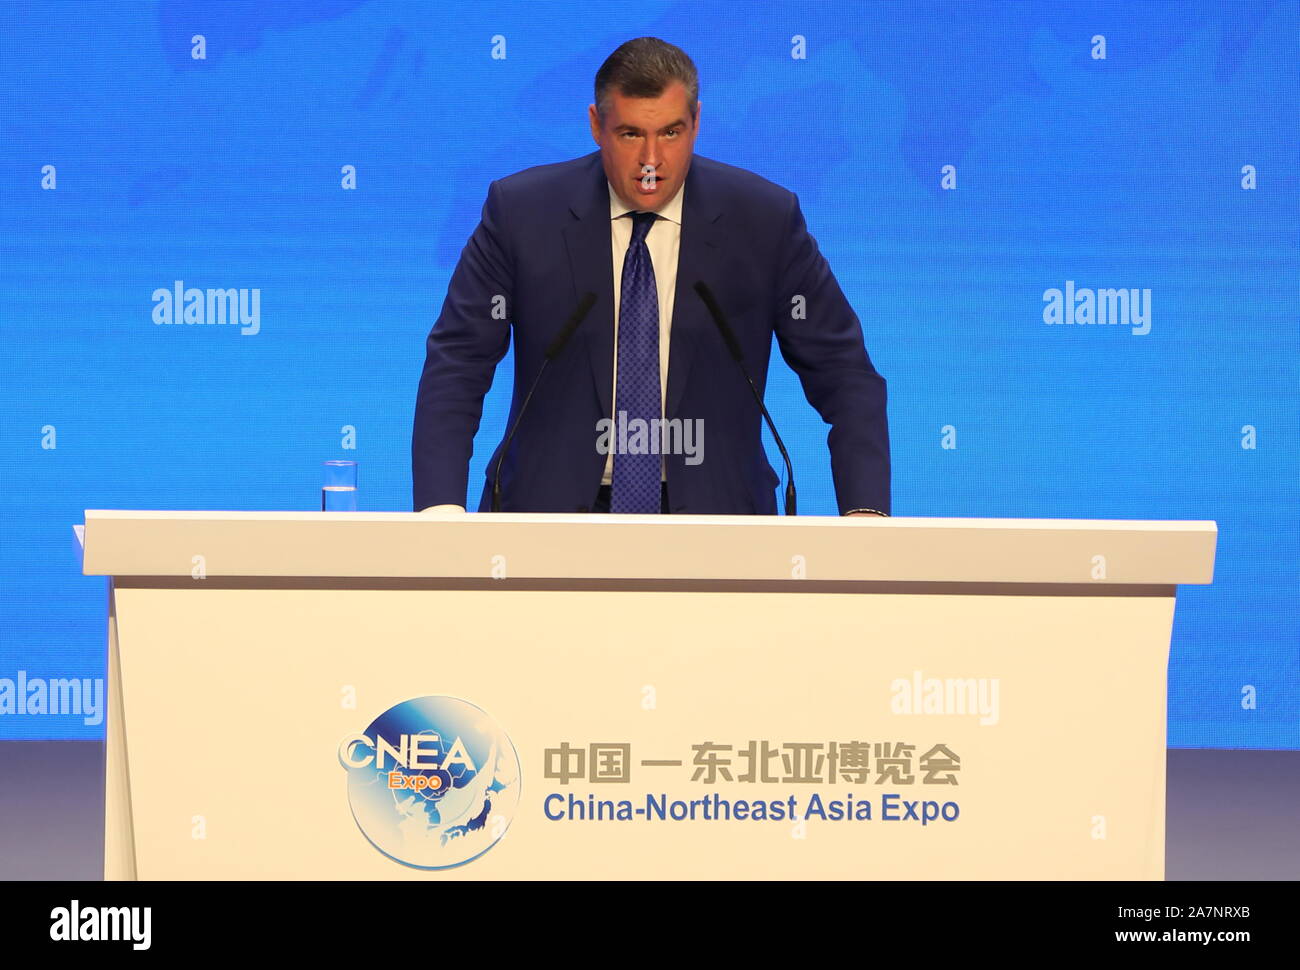 Eduardovich Leonid Slutsky, membre de la Douma de Russie, assiste à la cérémonie d'ouverture du 12e China-Northeast Asia Expo démarre en Changch Banque D'Images